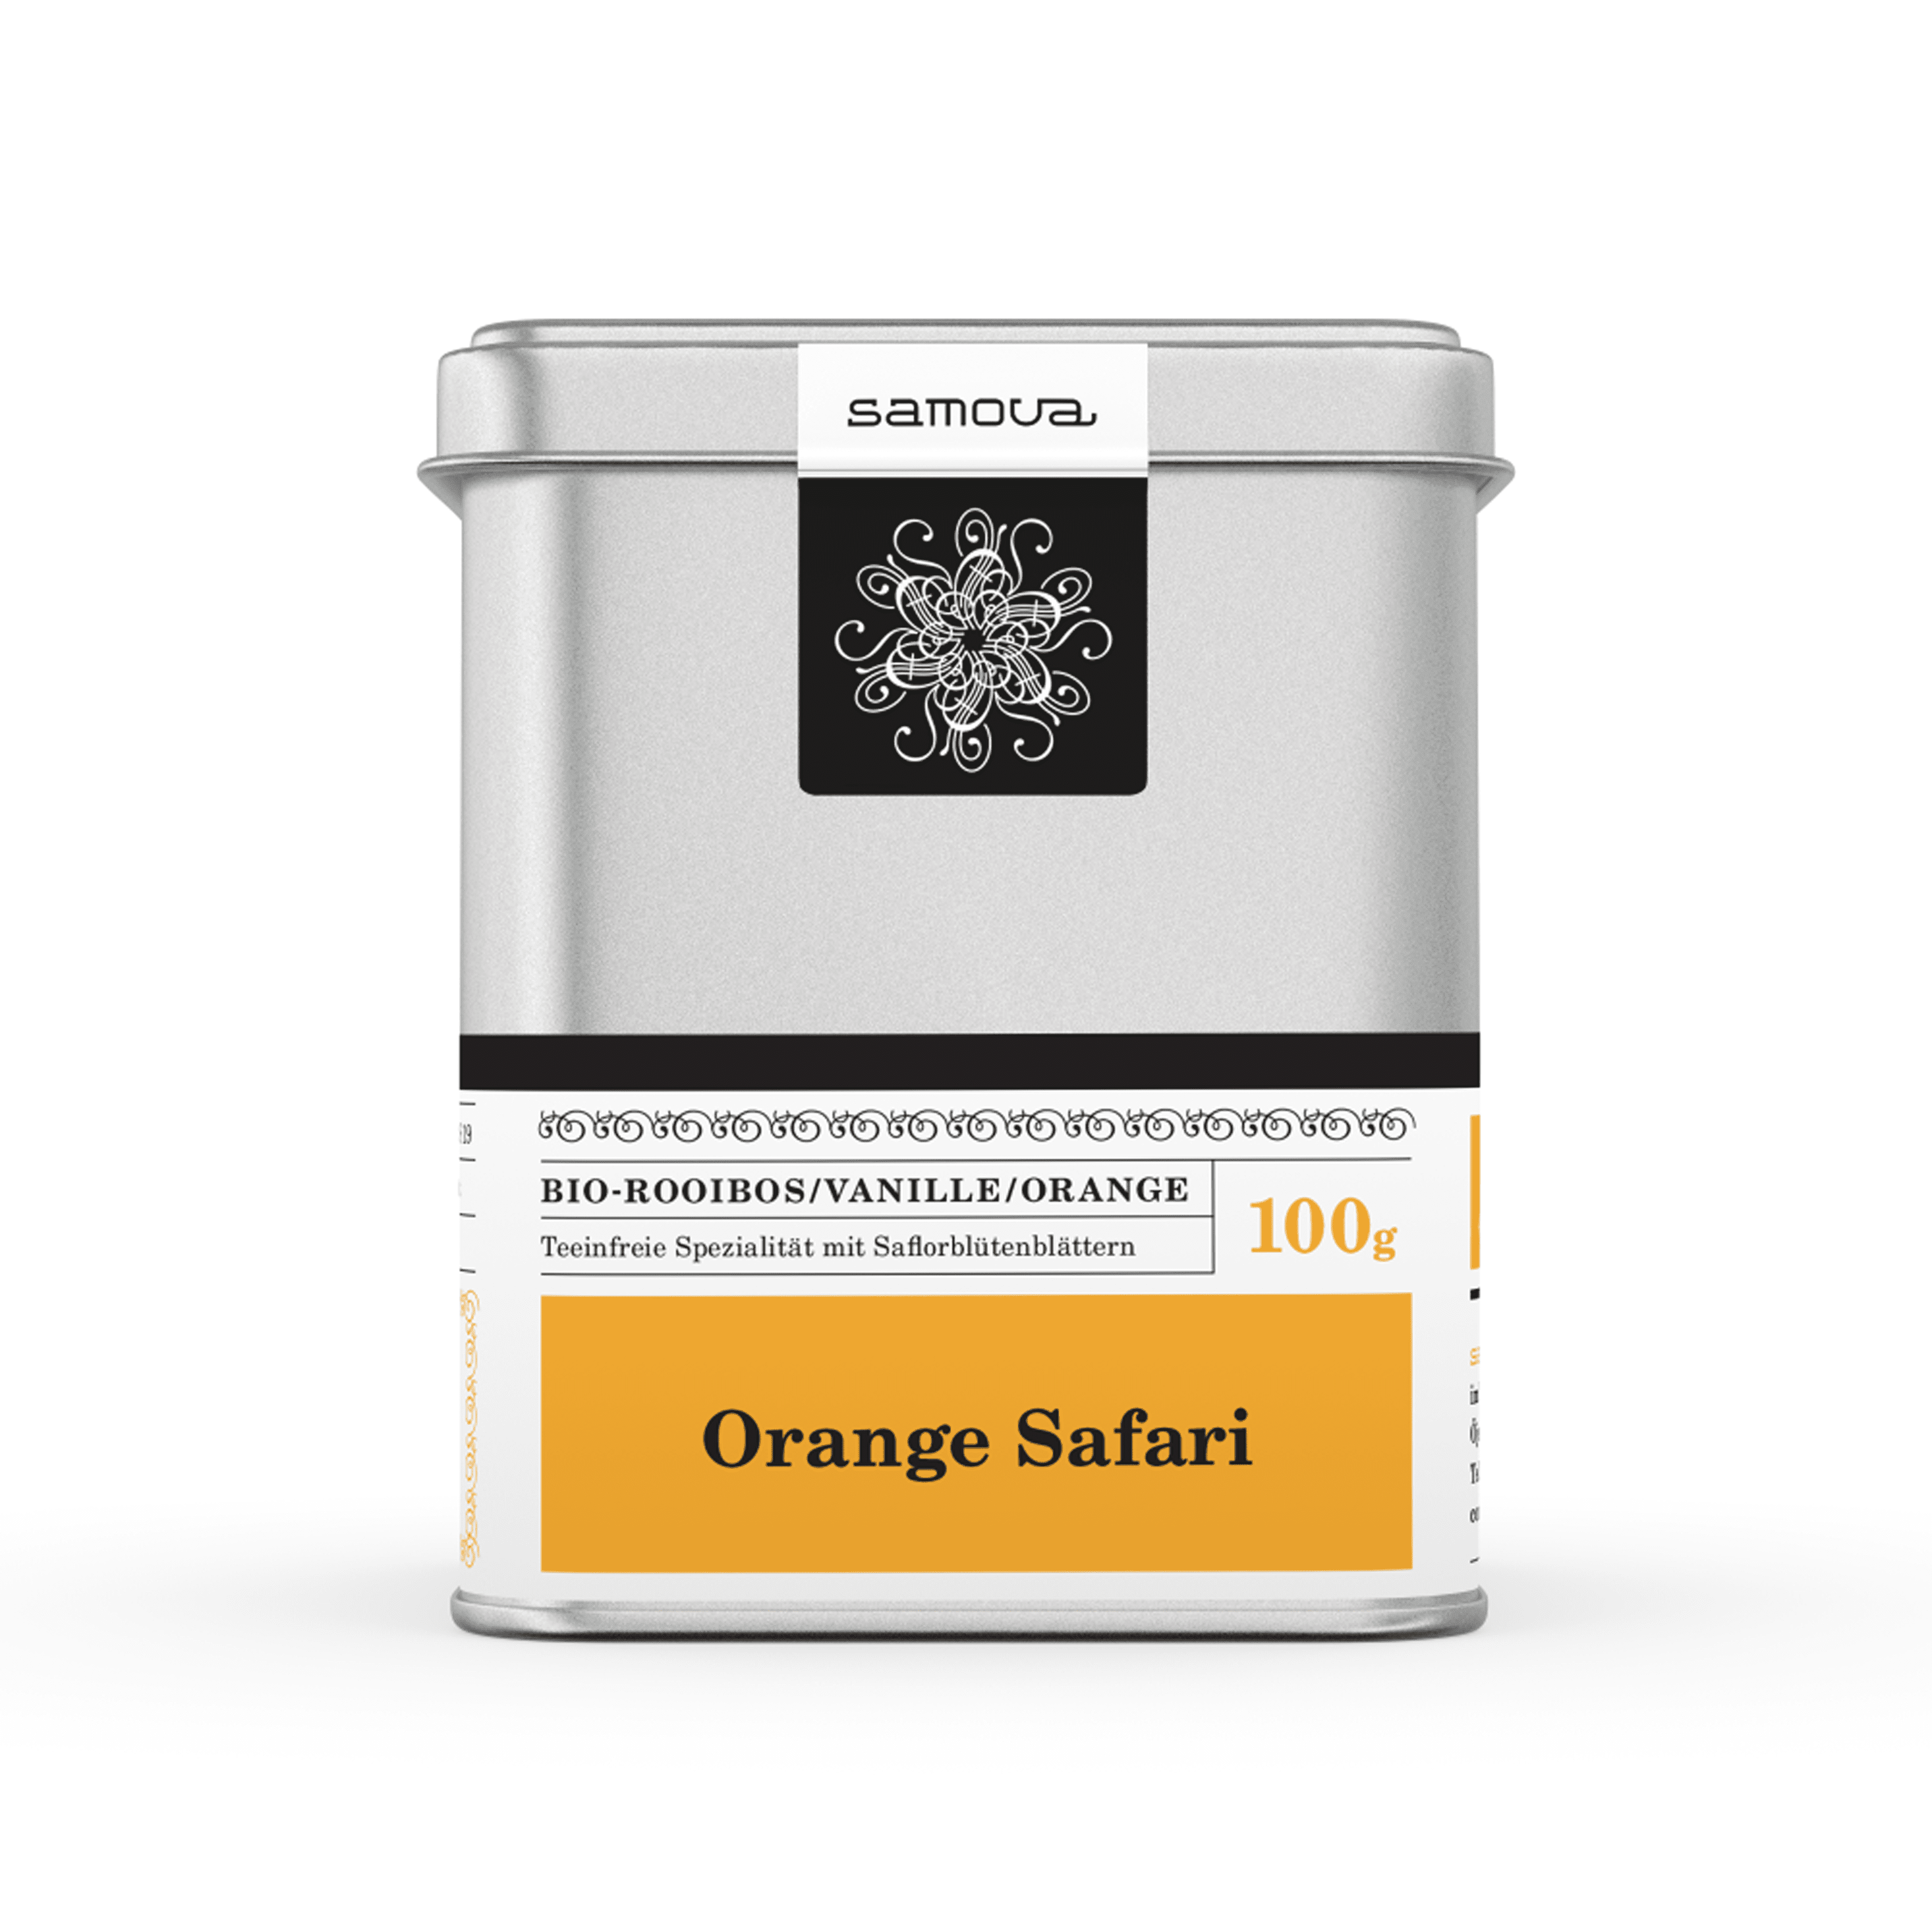 Dåse med Orange Safari te